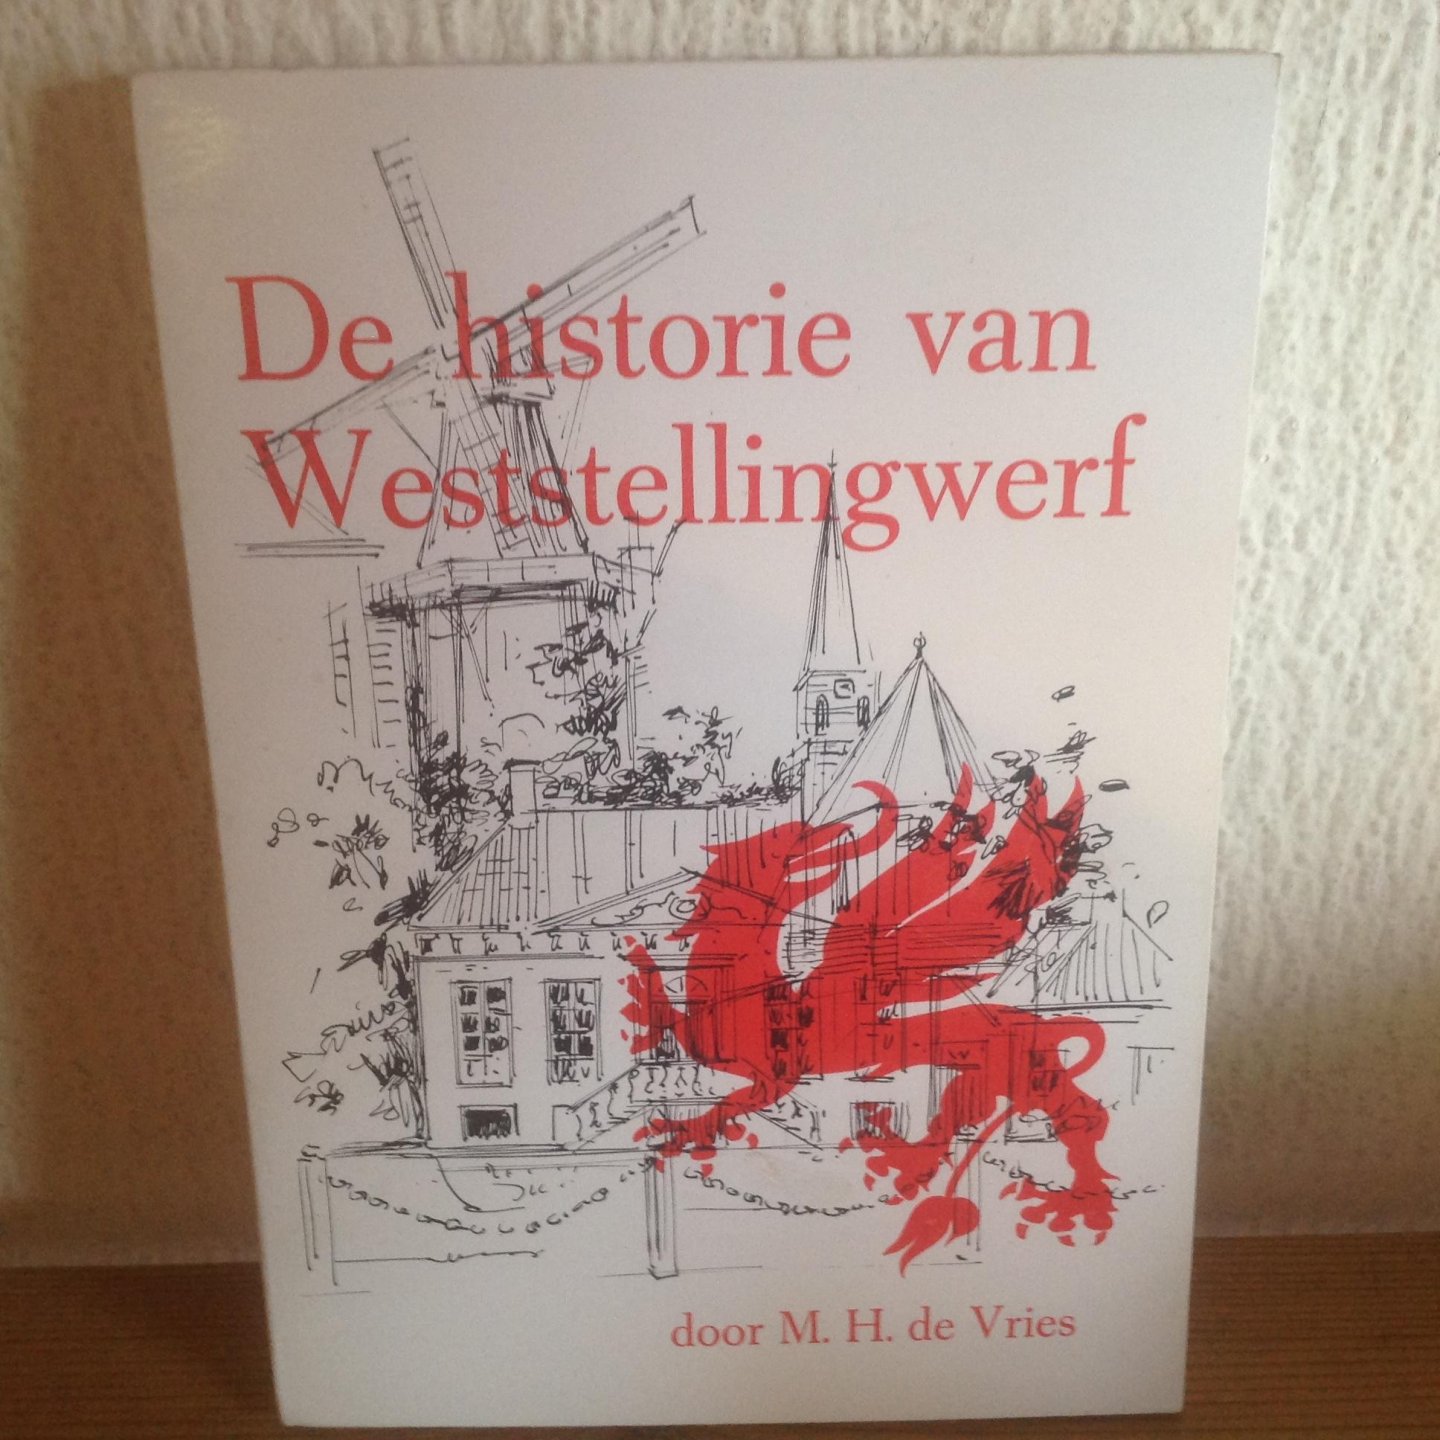  - De historie van Weststellingwerf